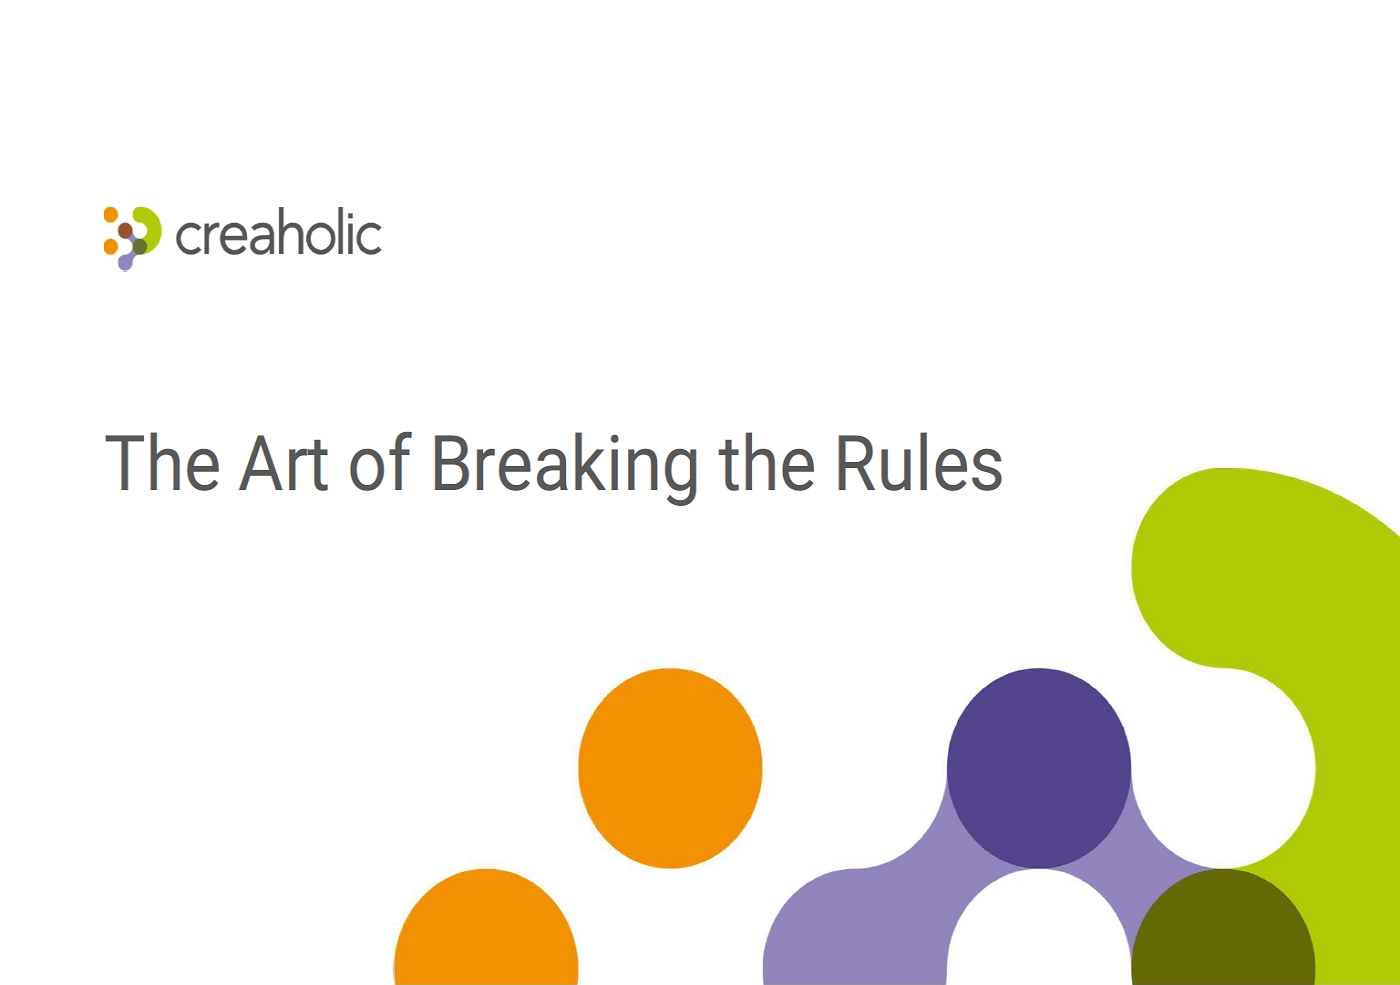 The Art of breakin gthe rules